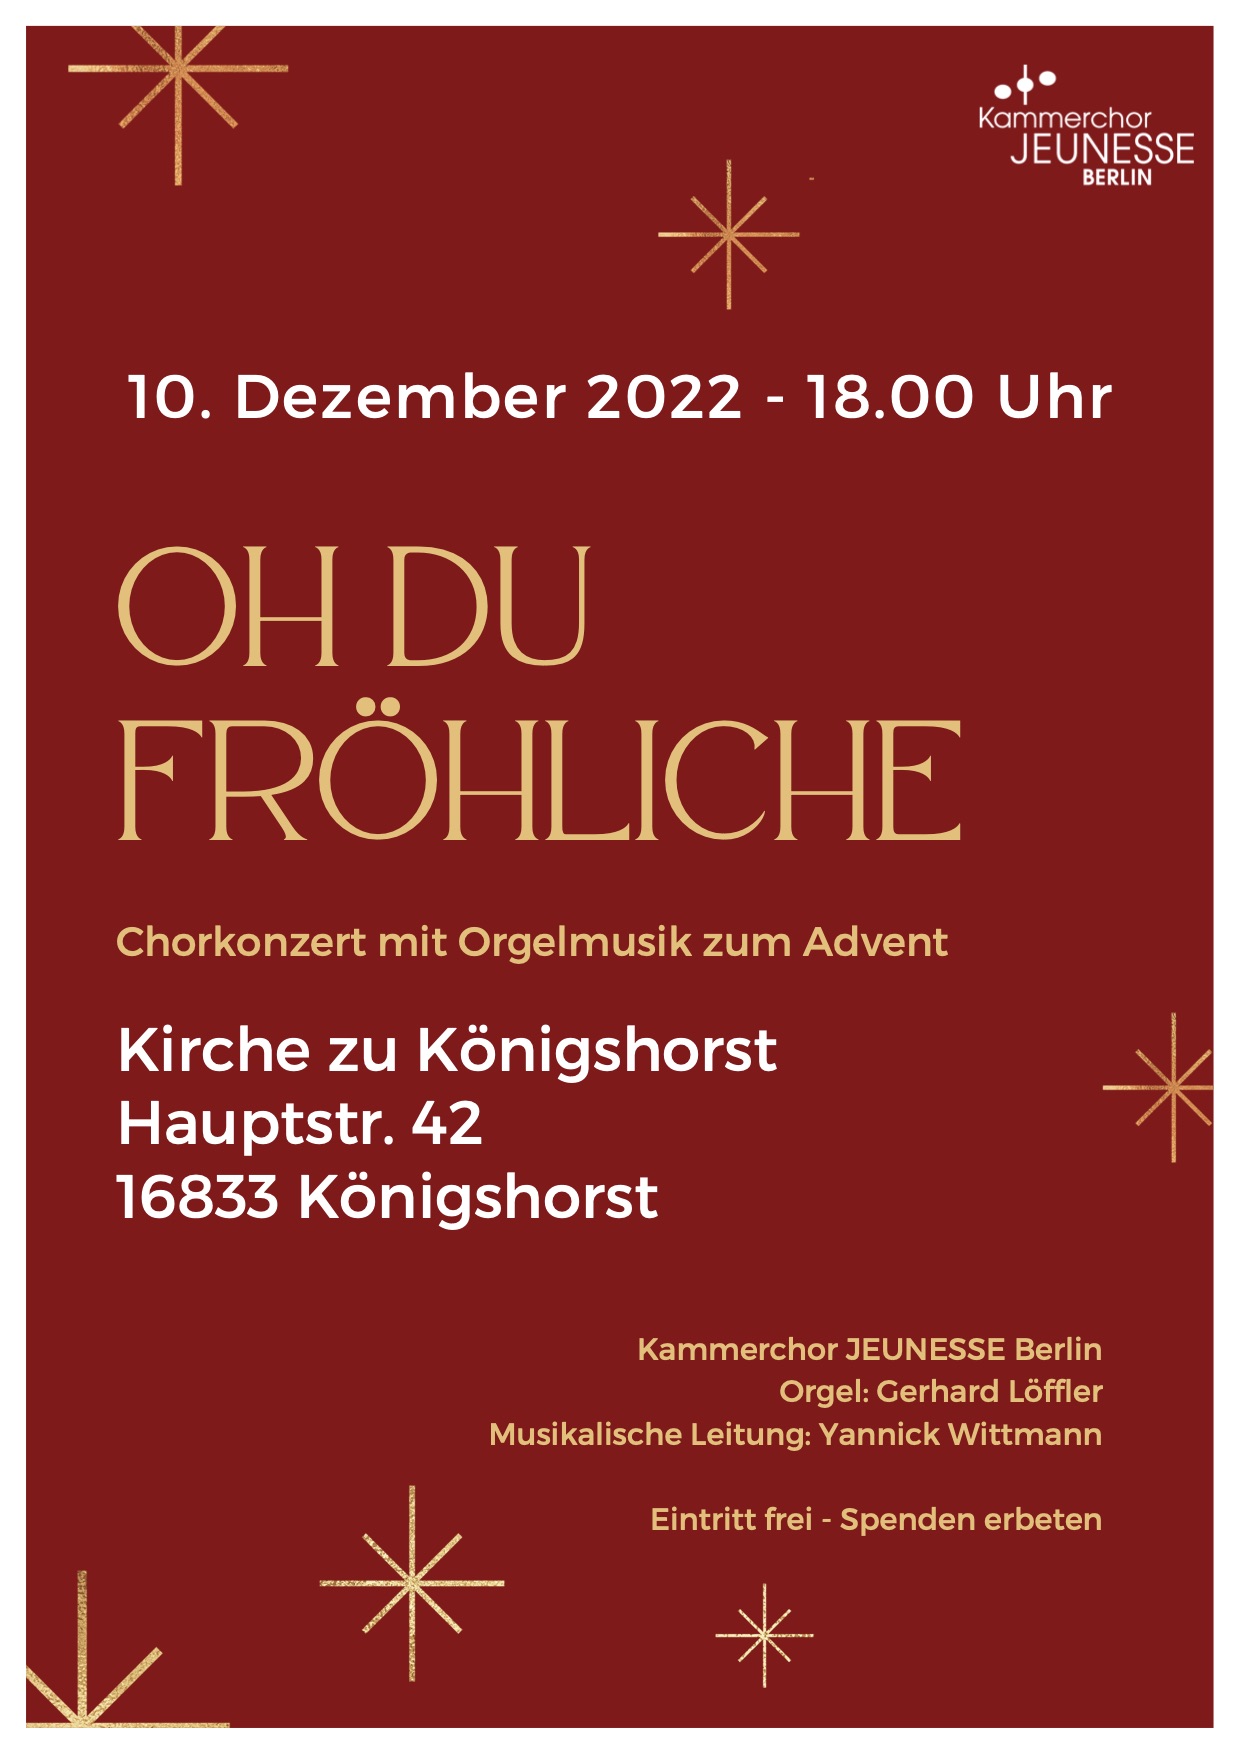 O Du Fröhliche - Adventskonzert mit dem Kammerchor JEUNESSE